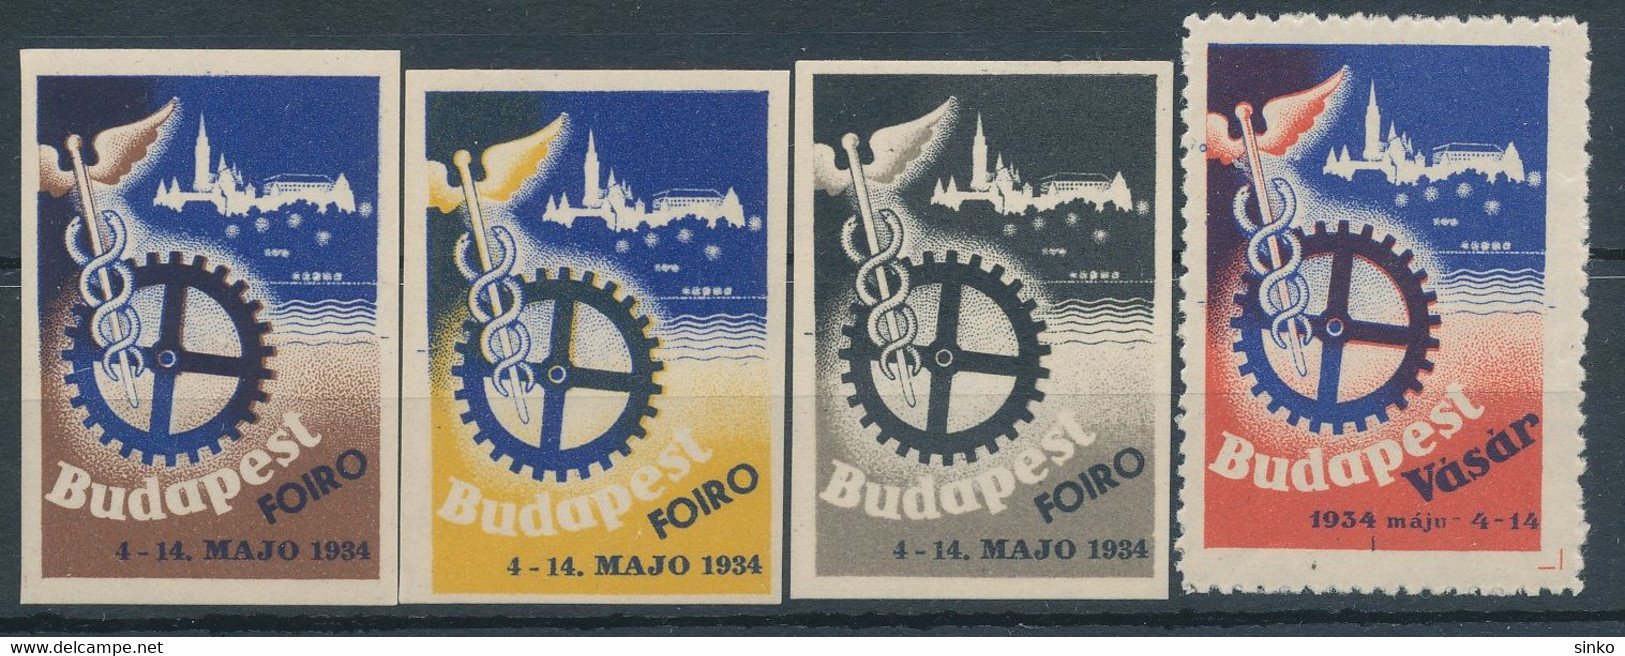 1934. Budapest Fair! - Hojas Conmemorativas